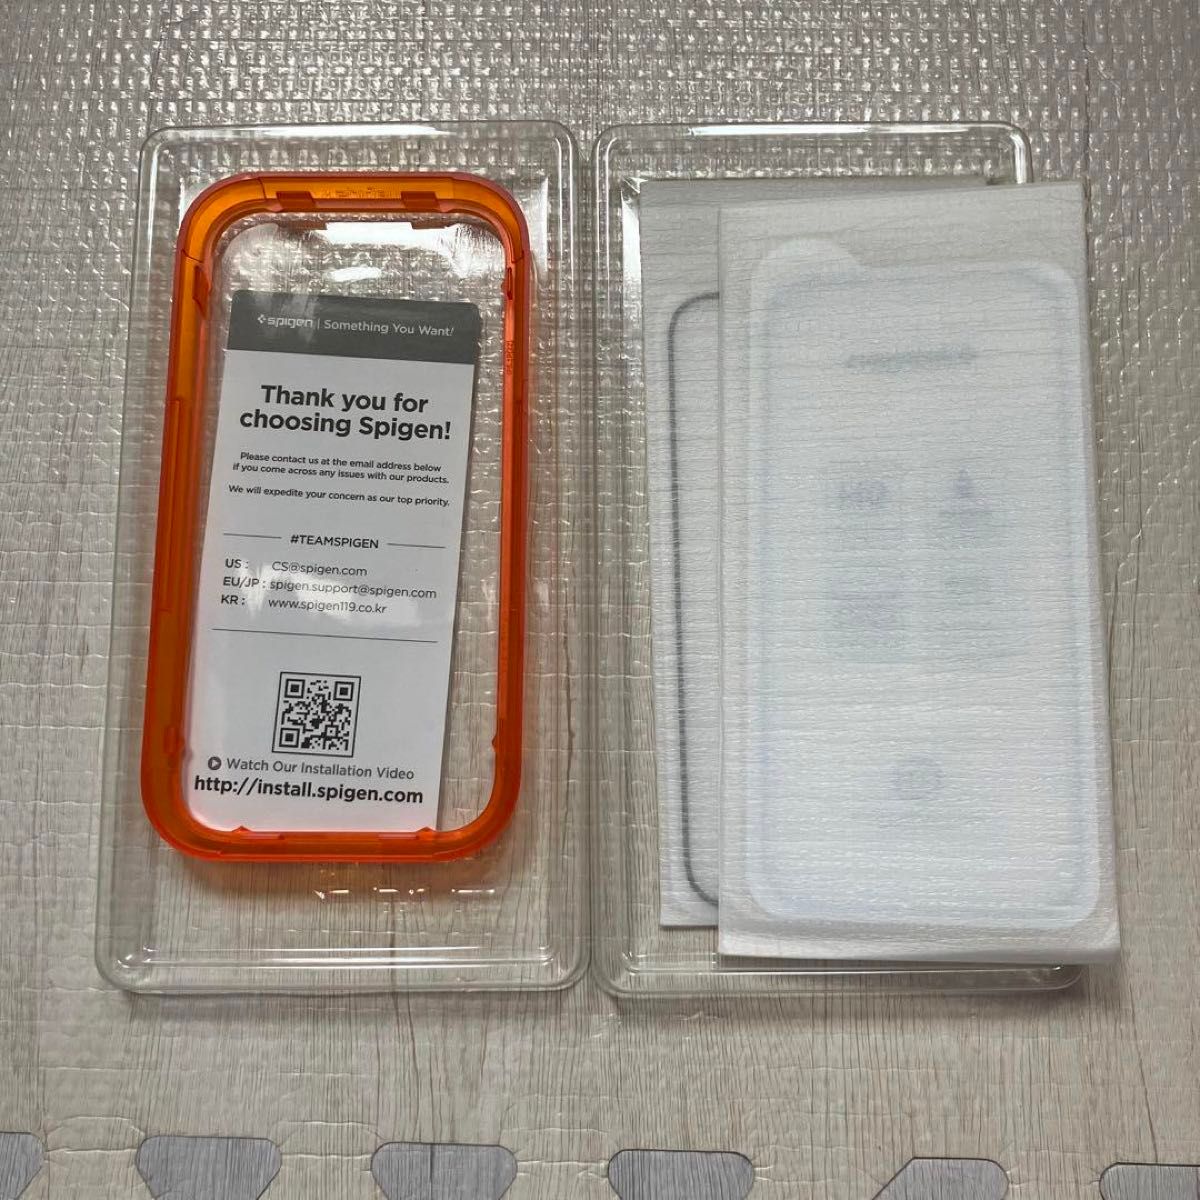 Spigen AlignMaster 全面保護 ガラスフィルム iPhone 14 Pro 用 ガイド枠付き フィルム 